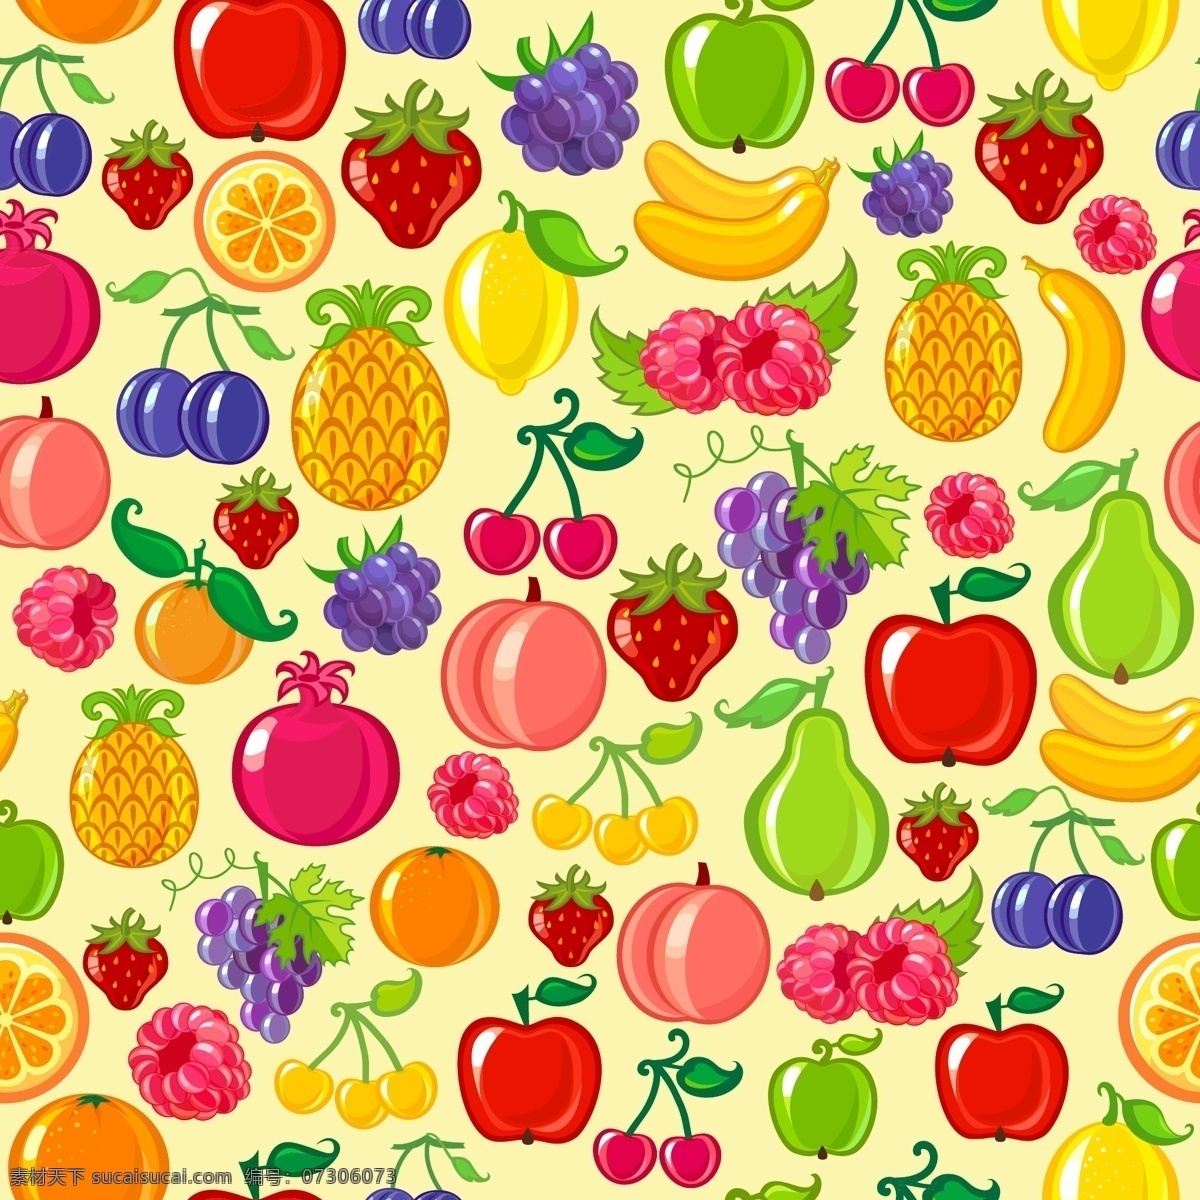 水果背景素材 水果背景 水果素材 背景 苹果 草莓 葡萄 梨子 香蕉 水果 橙子 樱桃 菠萝 橘子 石榴 黄色